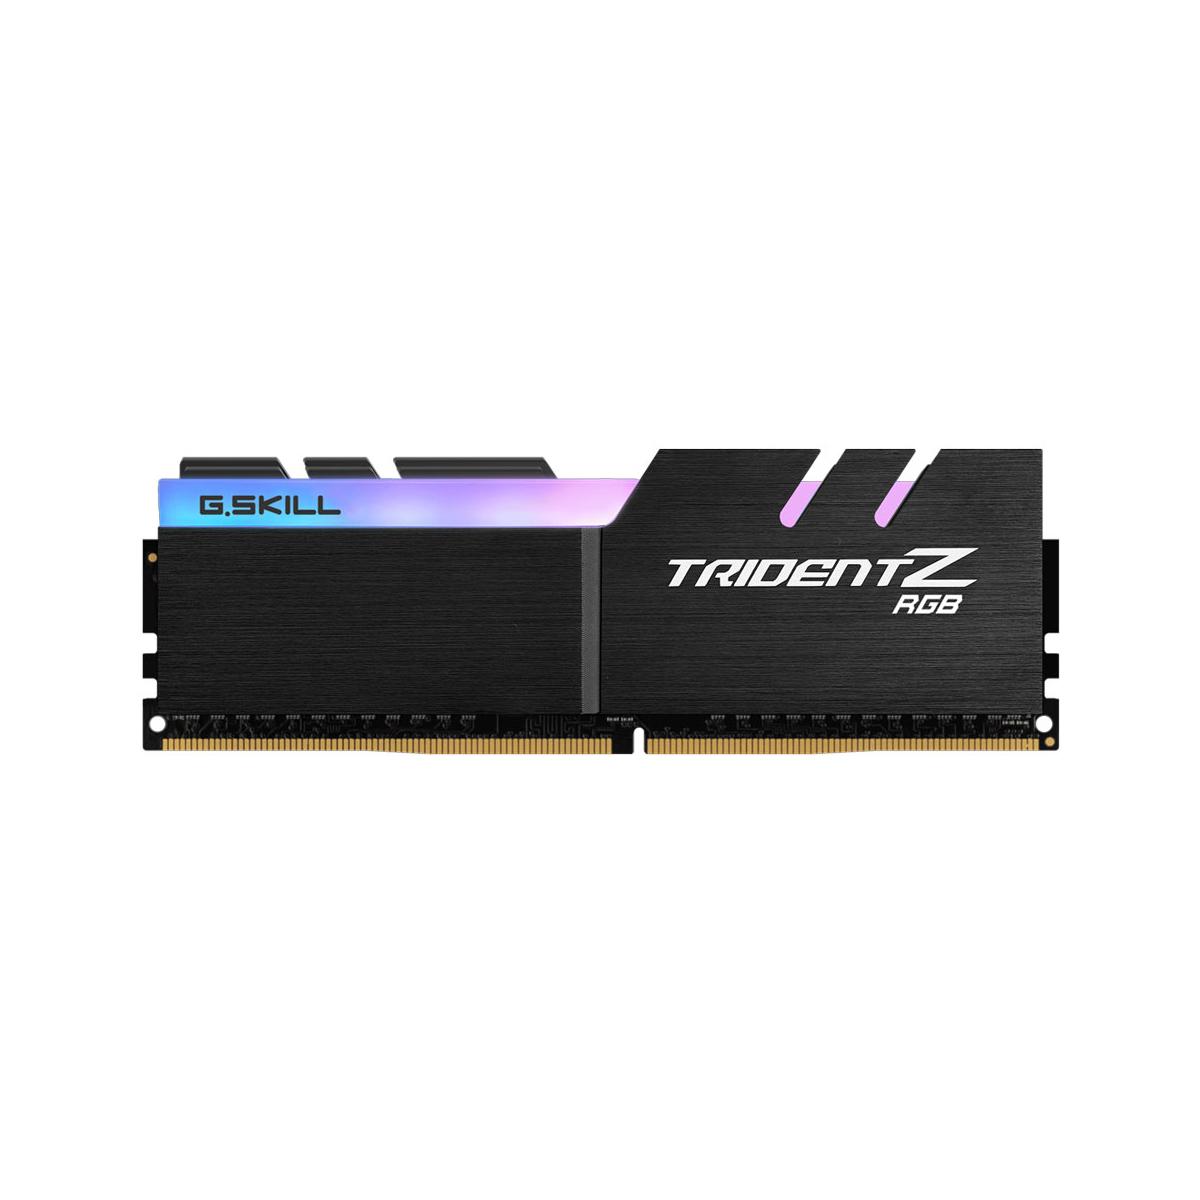 MEMORIA DIMM DDR4 G.SKILL (F4-3000C16S-8GTZR) 8GB(1X8GB) 3000MHZ, TRIDENT Z RGB - F4-3000C16S-8GTZR